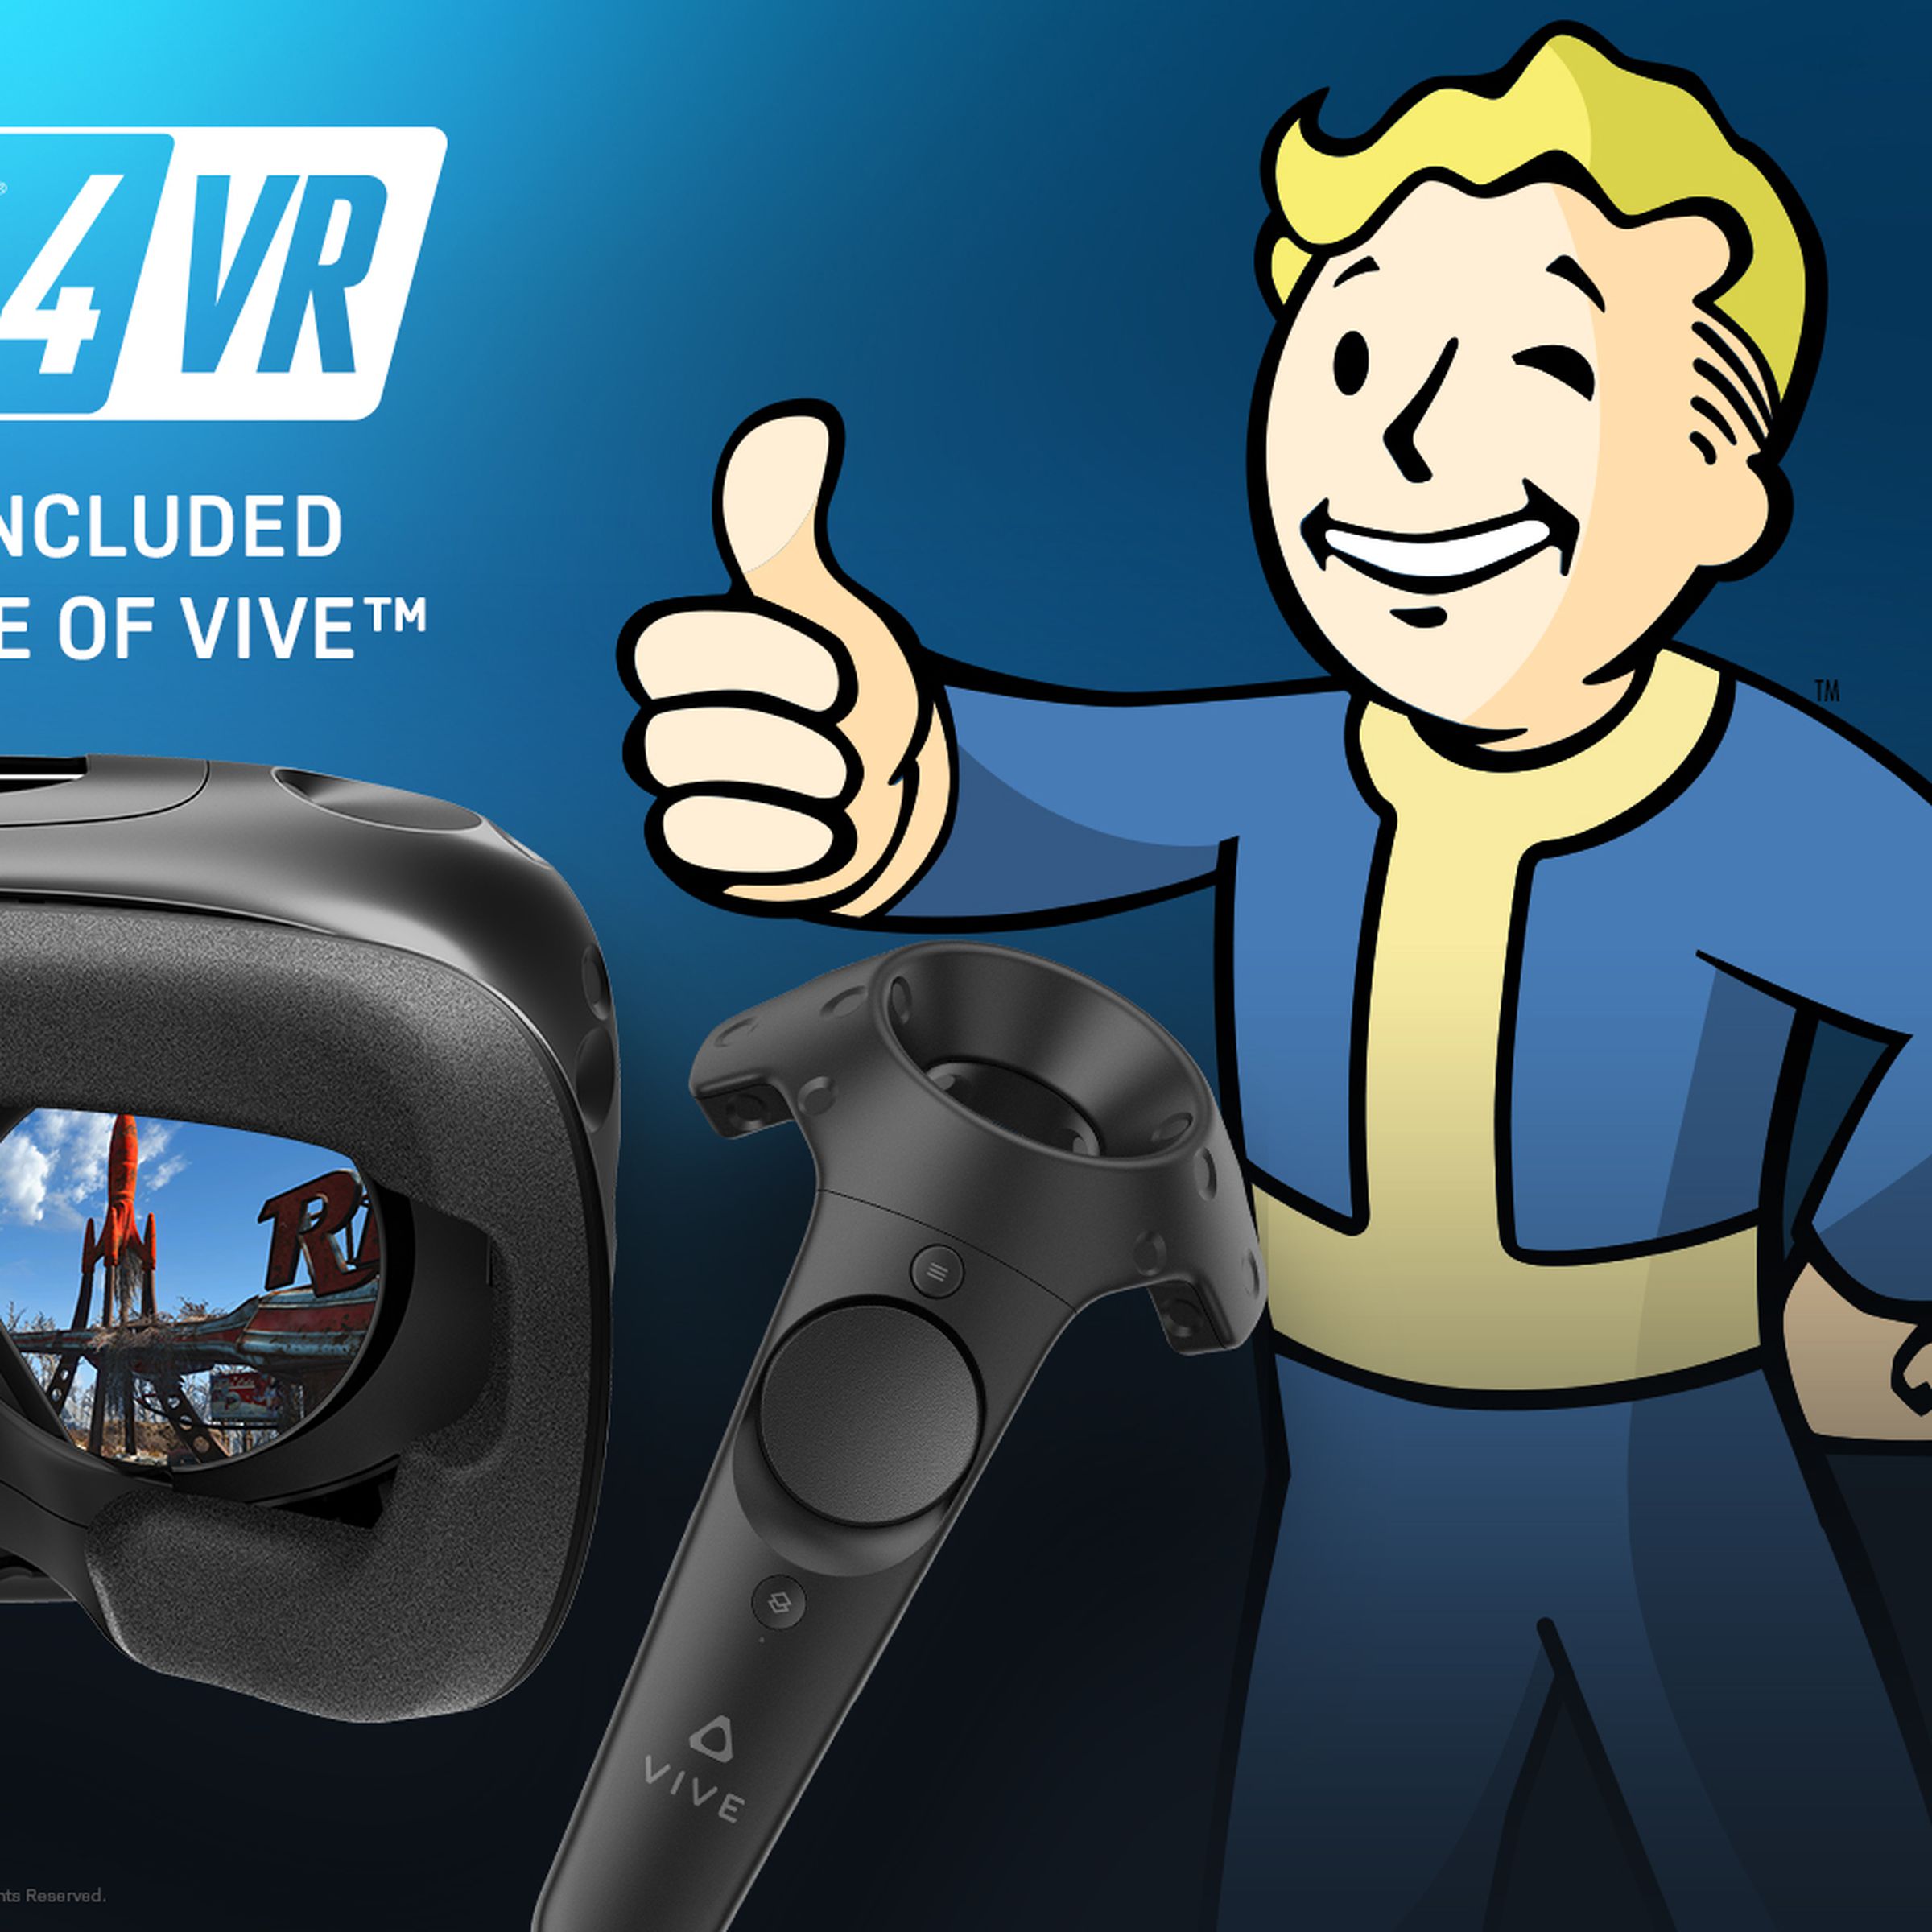 Fallout VR bundle